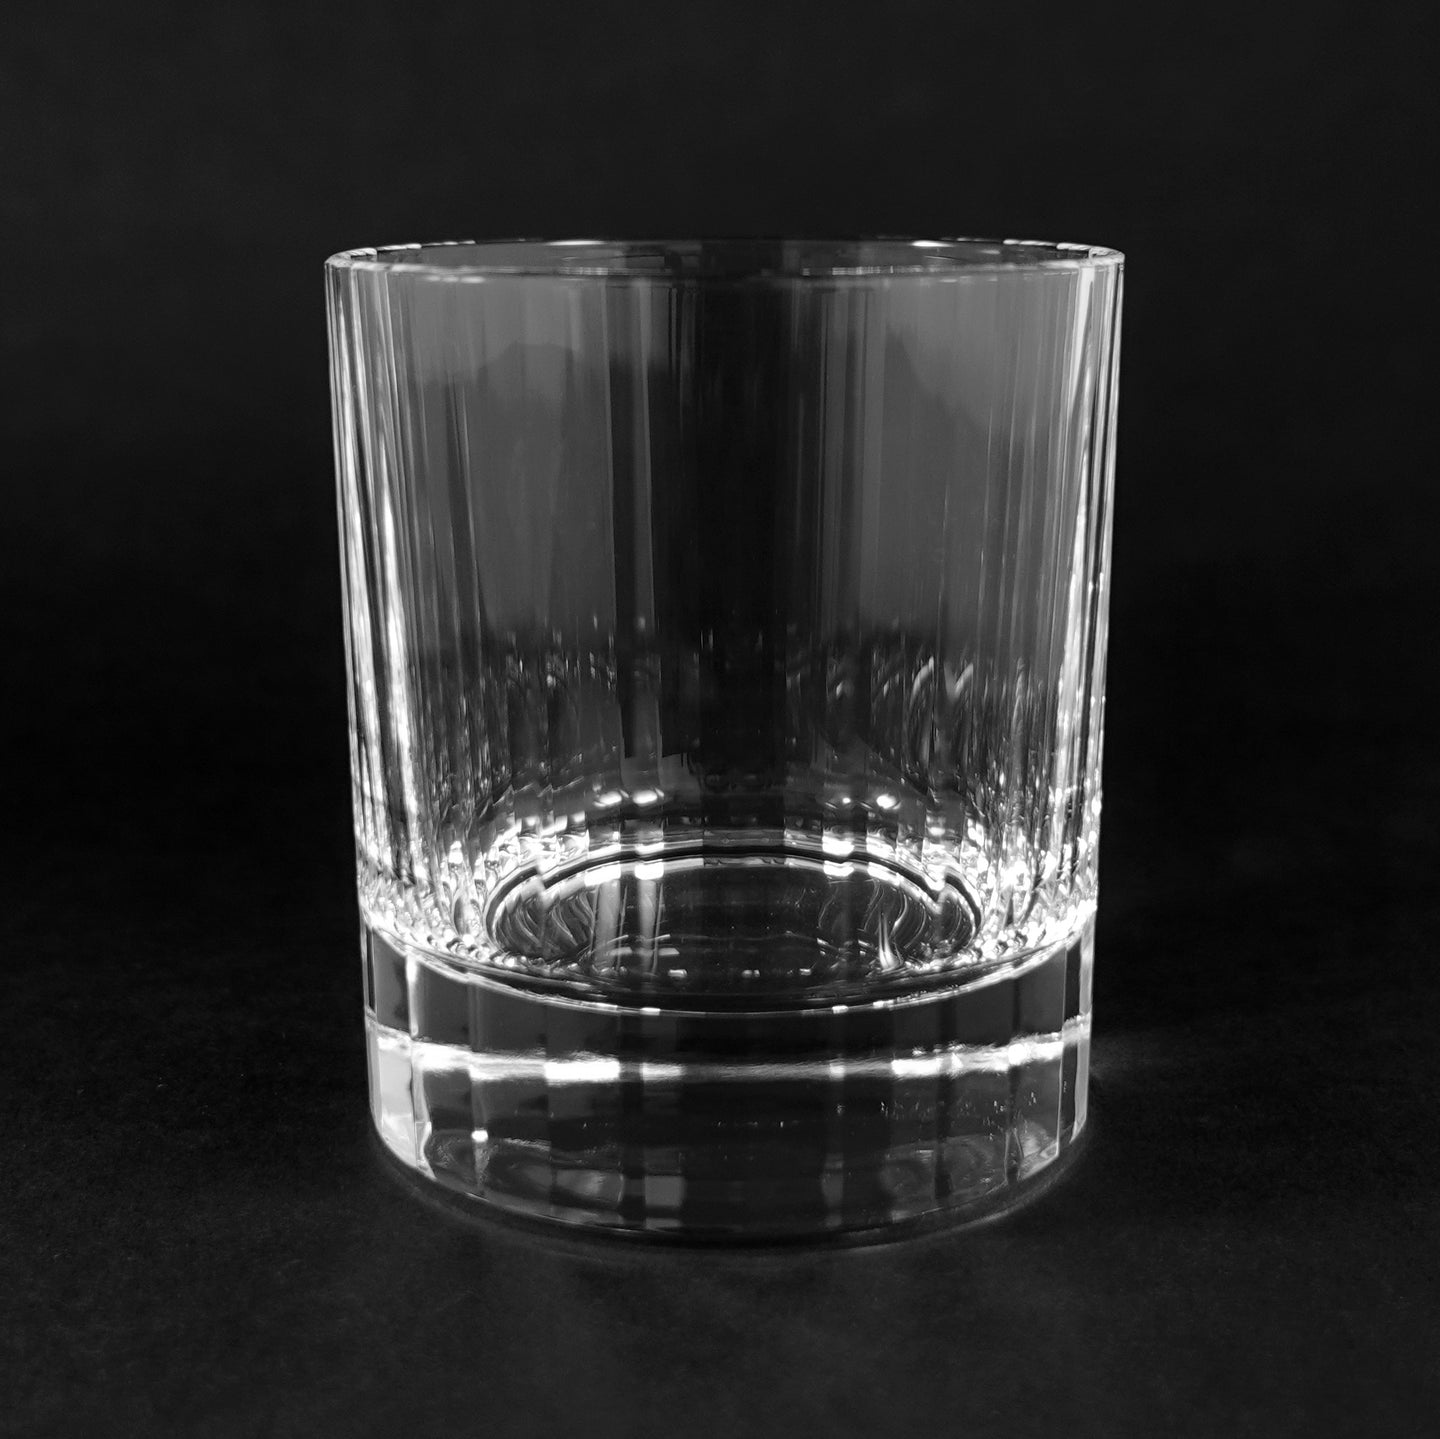 エンタシスオールド - THE GLASS GIFT SHOP SOKICHI